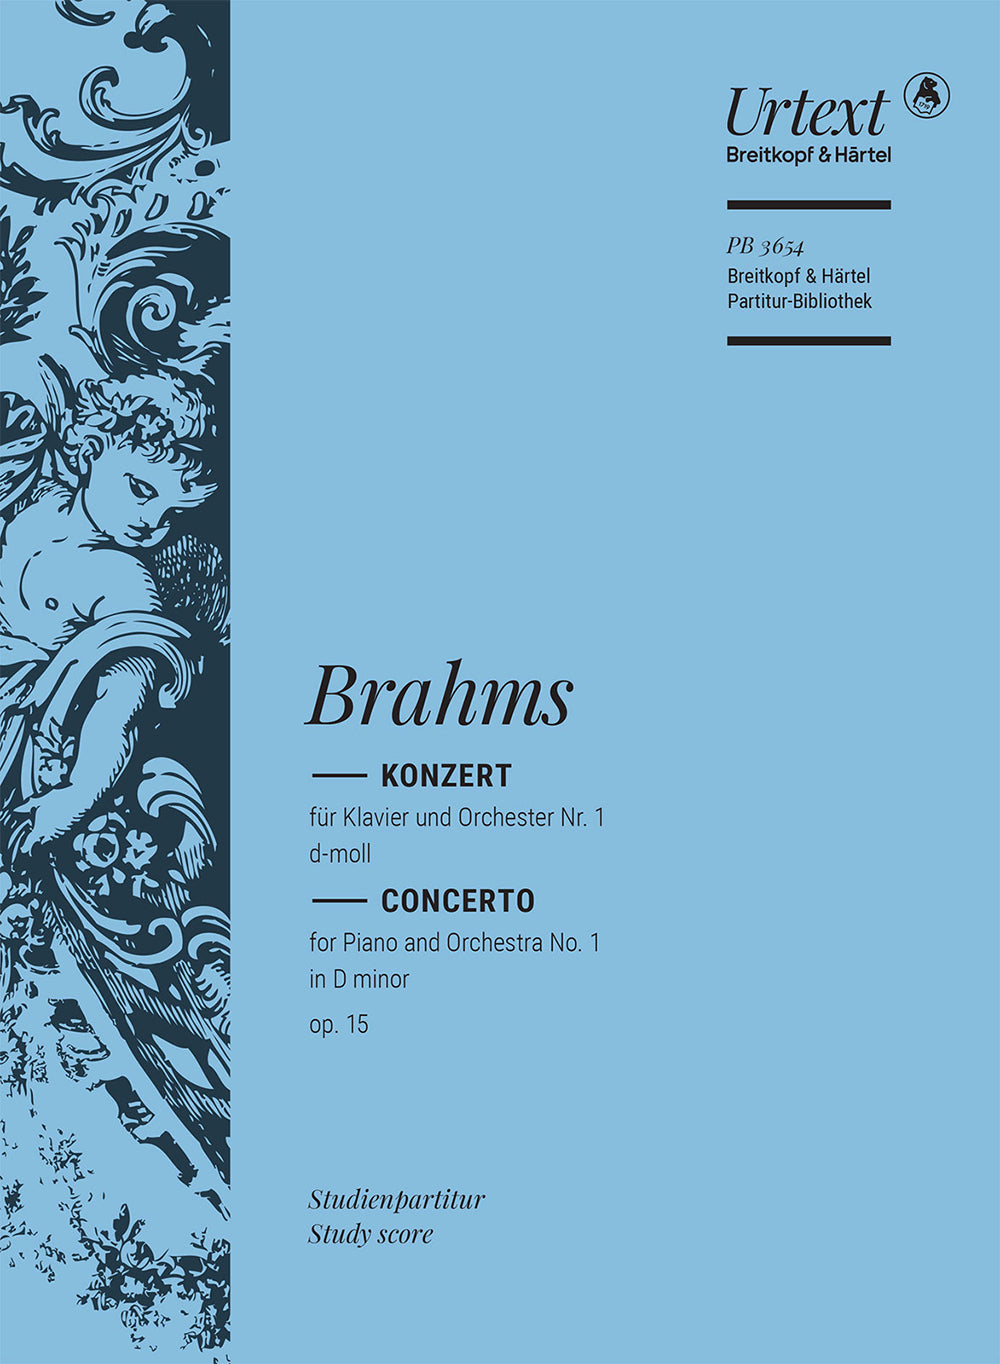 Brahms Piano Concerto No. 1 in D minor Op. 15